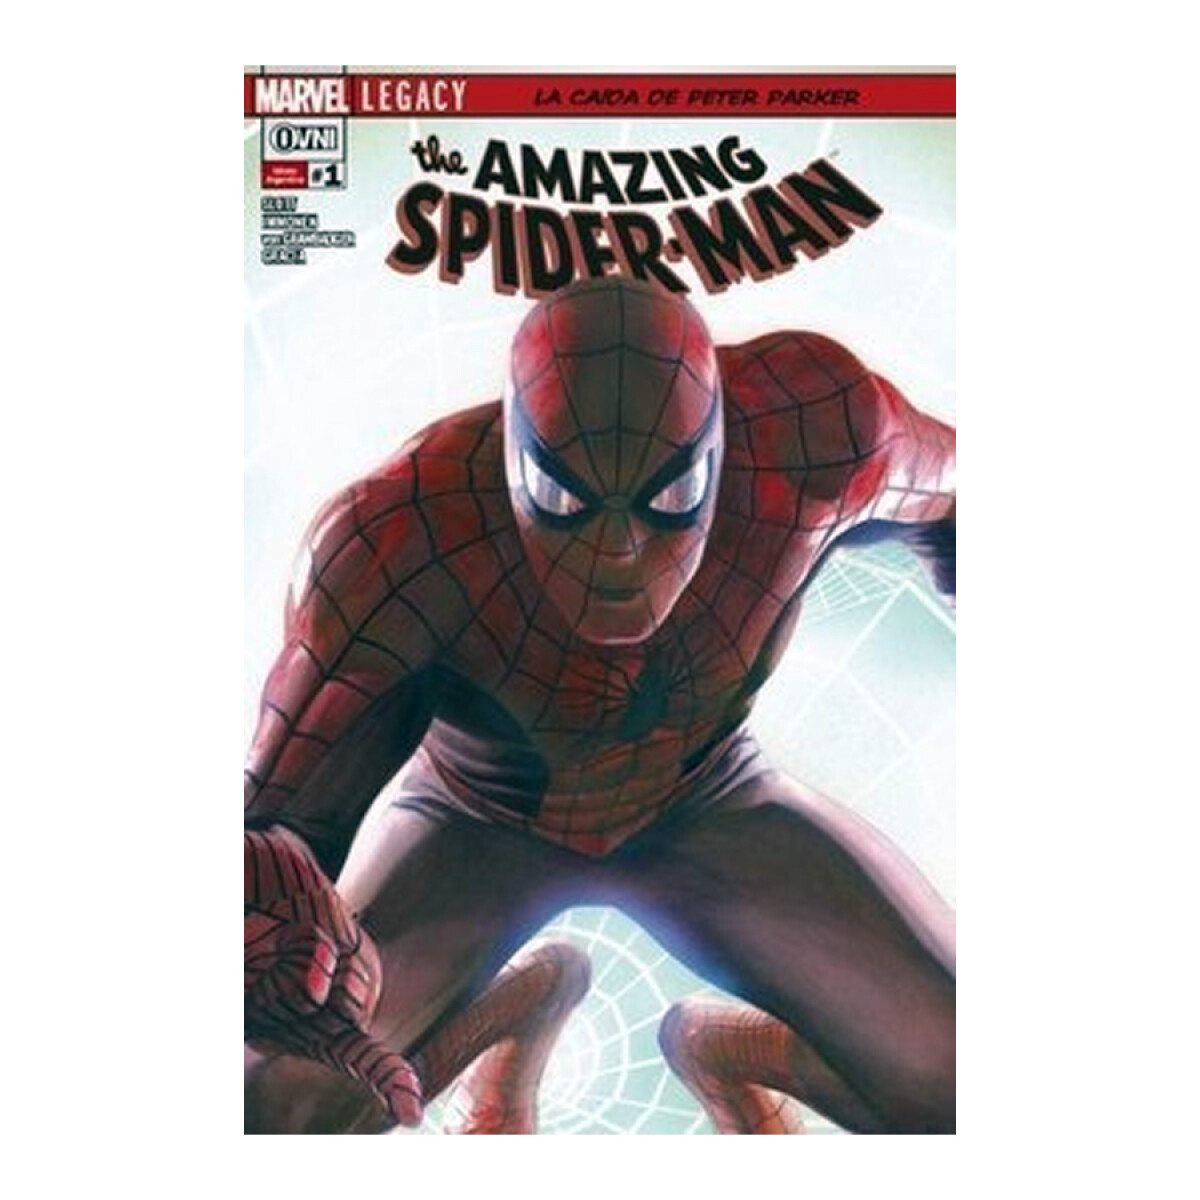 The Amazing Spider-Man: La Caída de Peter Parker #1 